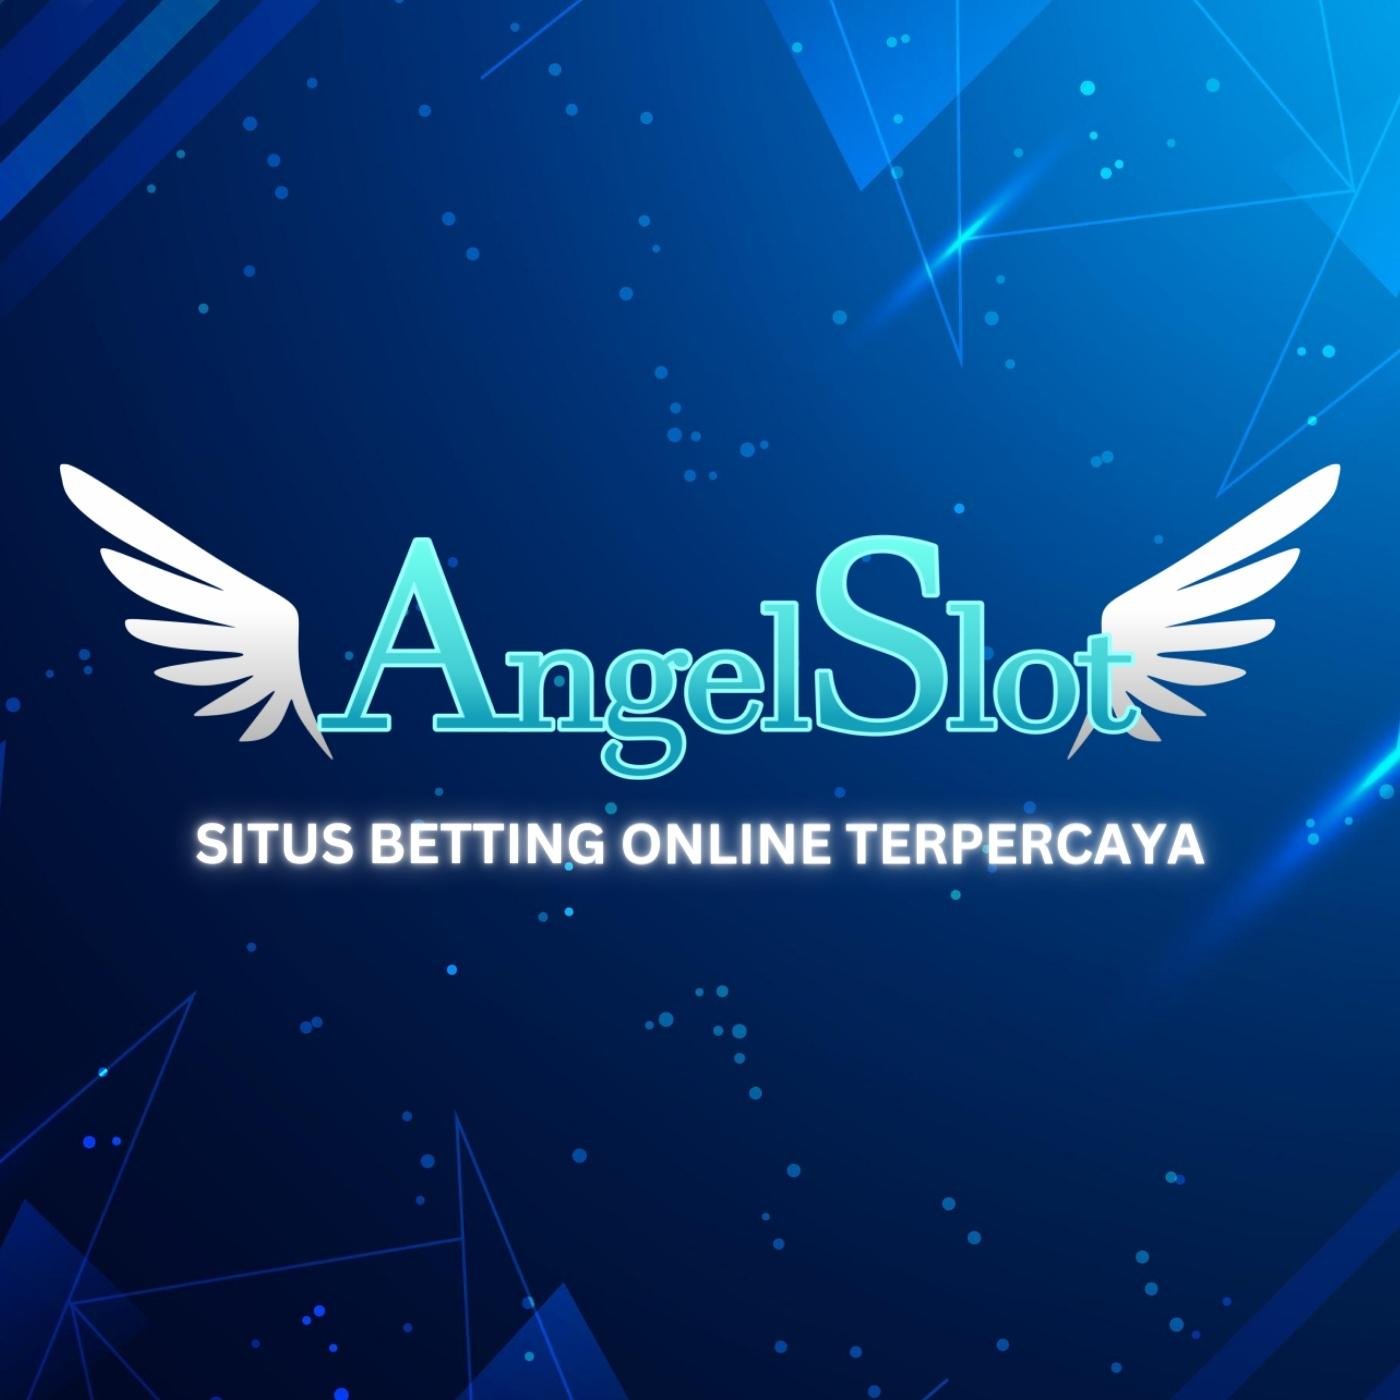 ANGELSLOT Situs Judi Slot Online Gacor Terpercaya Dengan Metode Transaksi Terlengkap Bank, E-wallet,